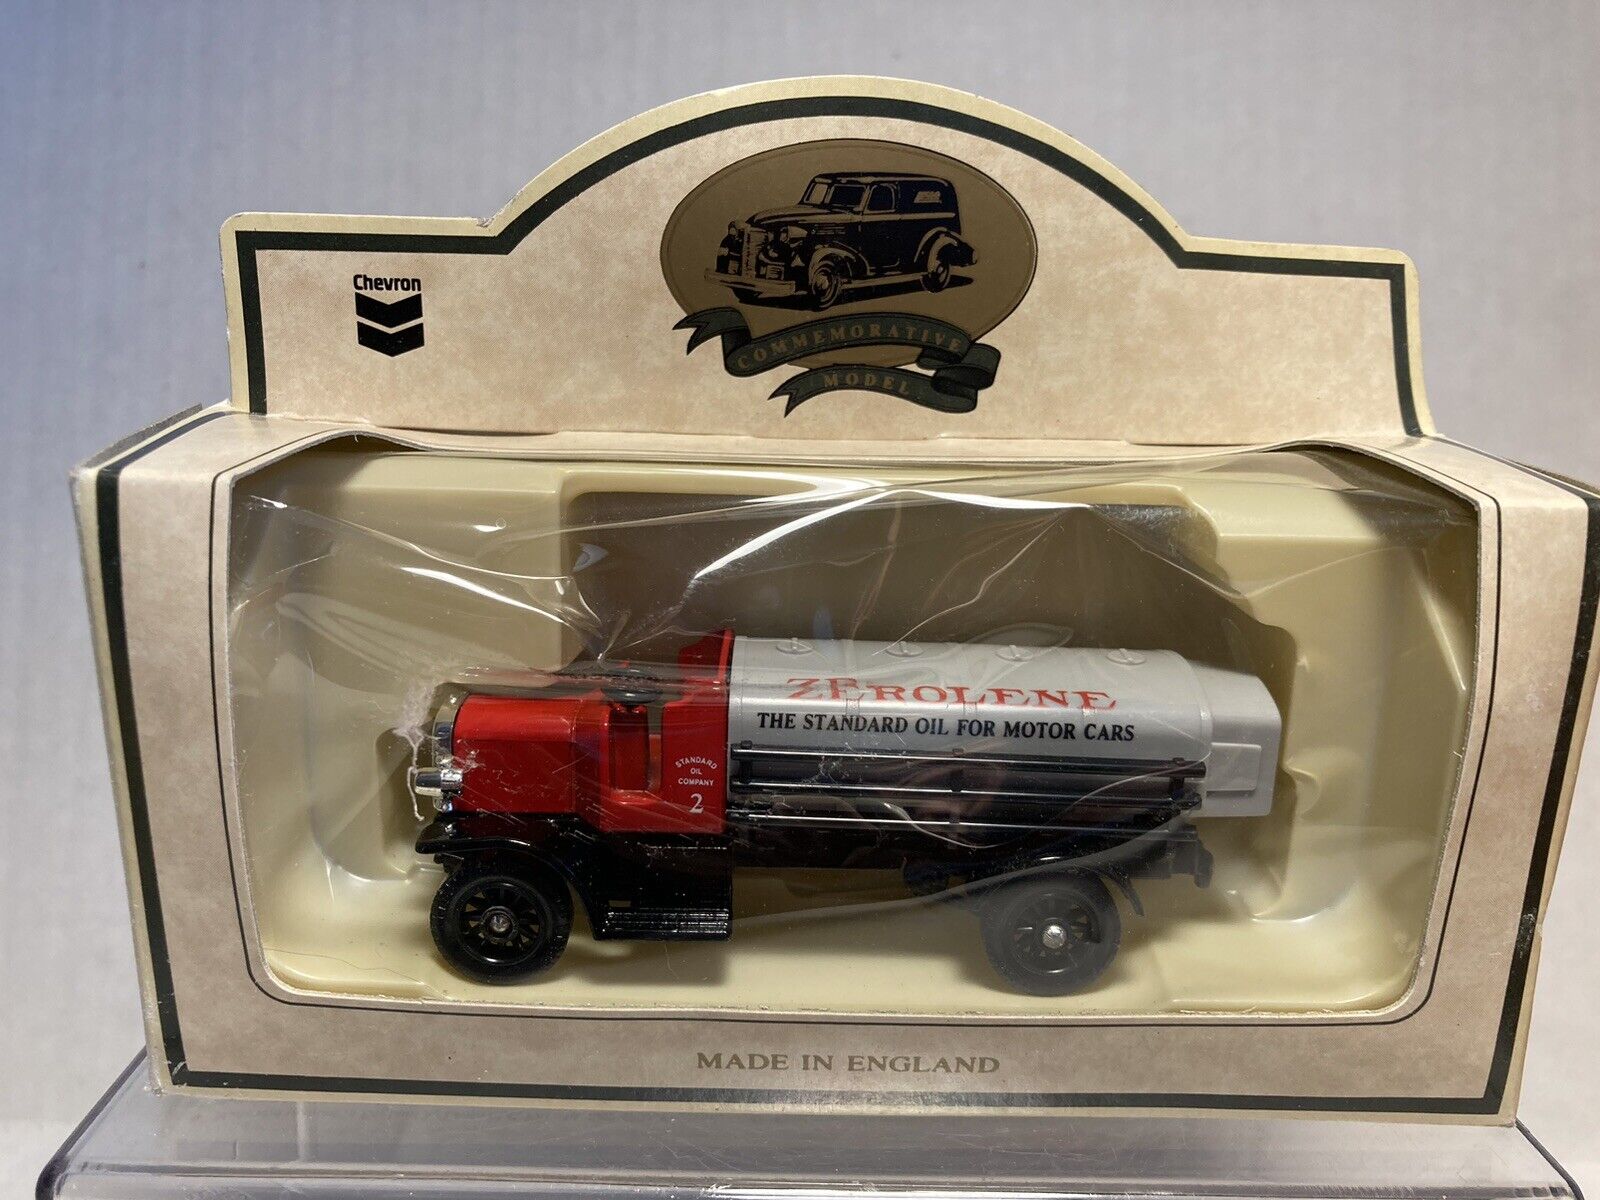 Lledo Chevron Standard Oil Zerolene 1911 Chain Drive Tank Truck Die Cast Red Toy